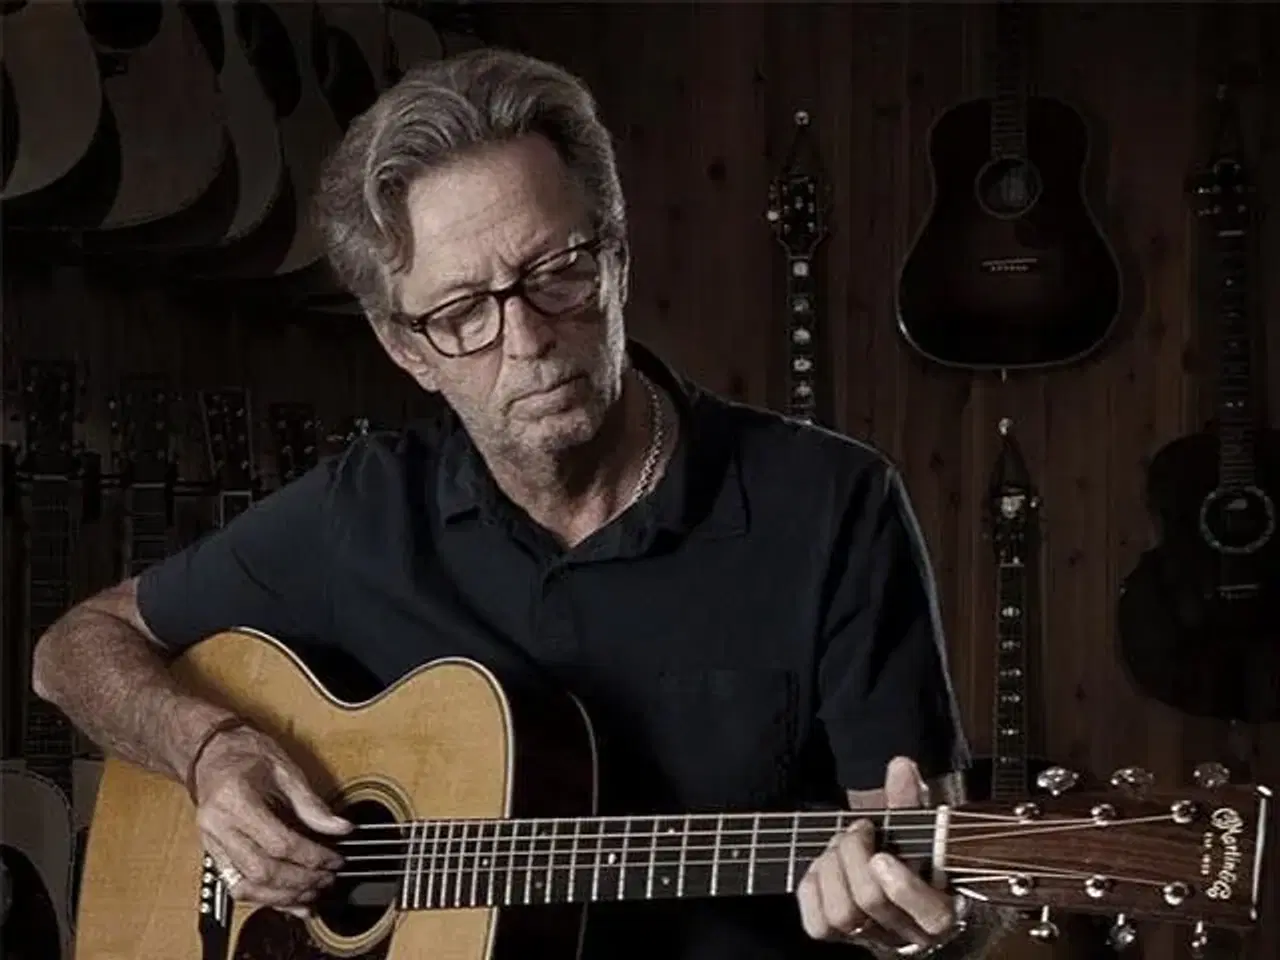 Billede 1 - Eric Clapton - 3 billetter sælges til d. 15 juni